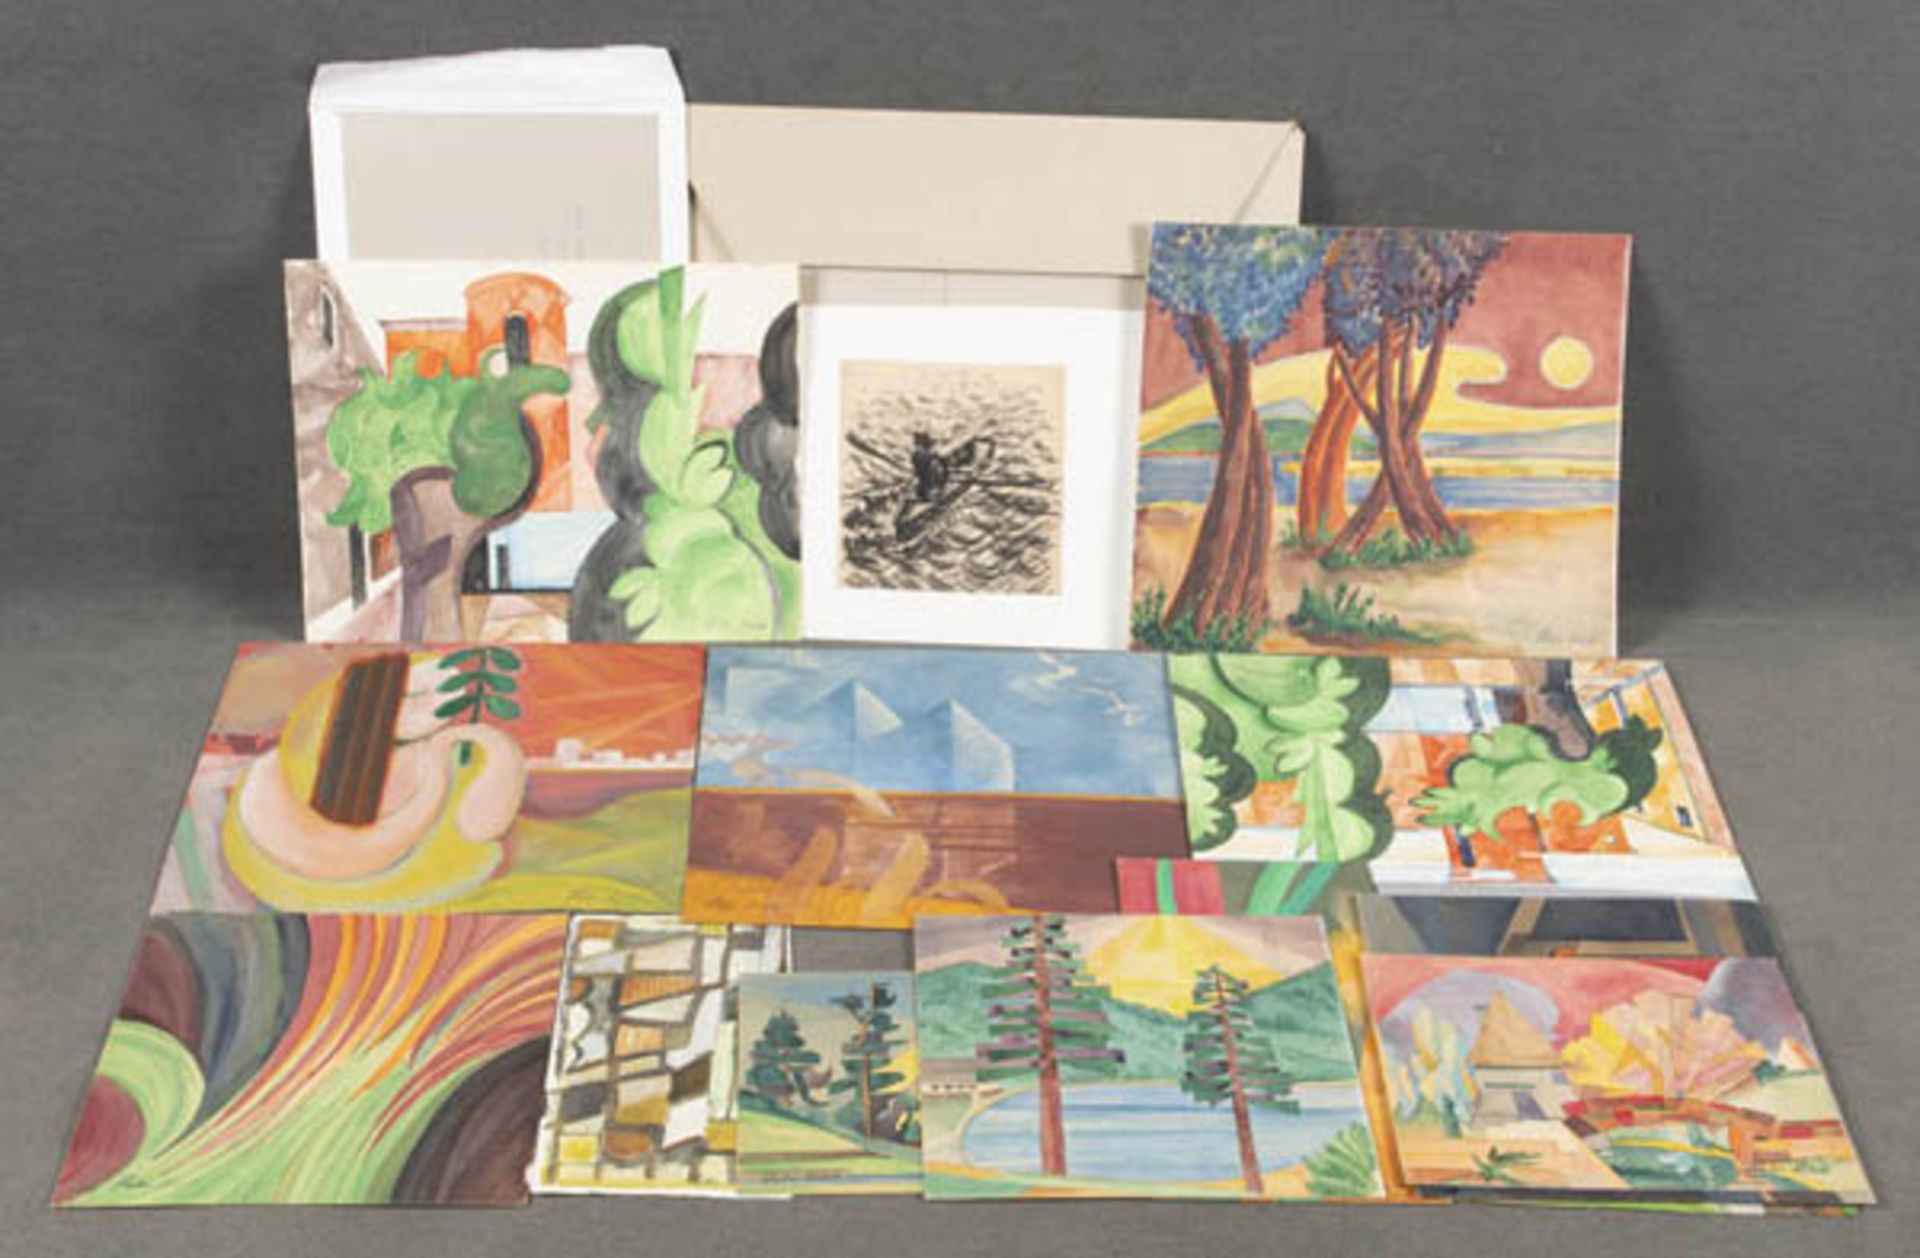 Peter Koch (geb. 1960). Mappe mit Landschaften und abstrakten Kompositionen. Aquarelle/Papier, 22,